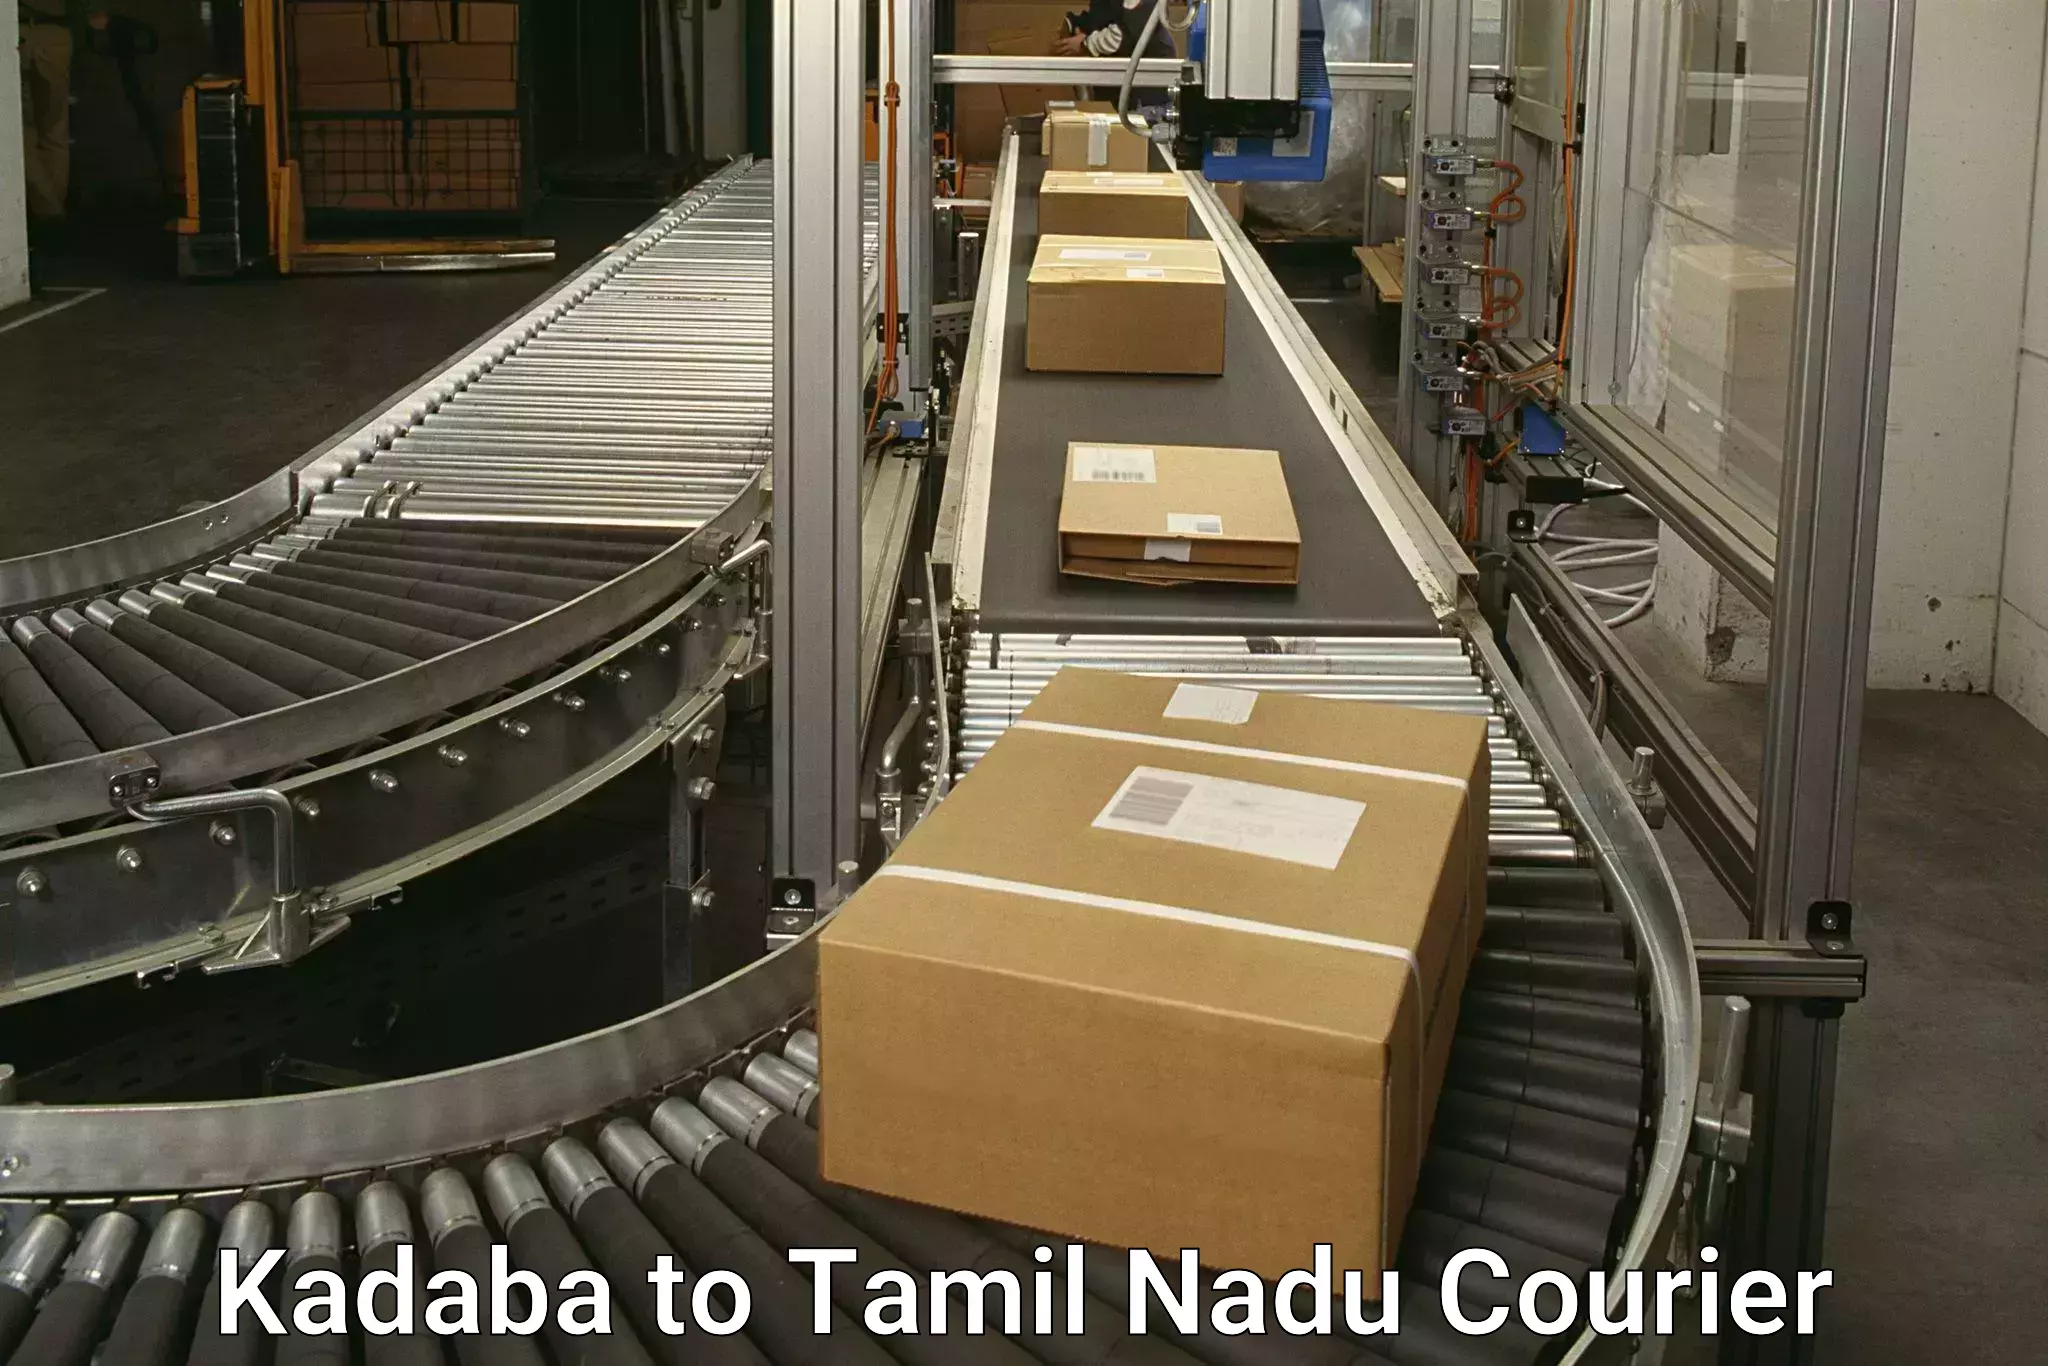 Discount courier rates Kadaba to Chennai Port